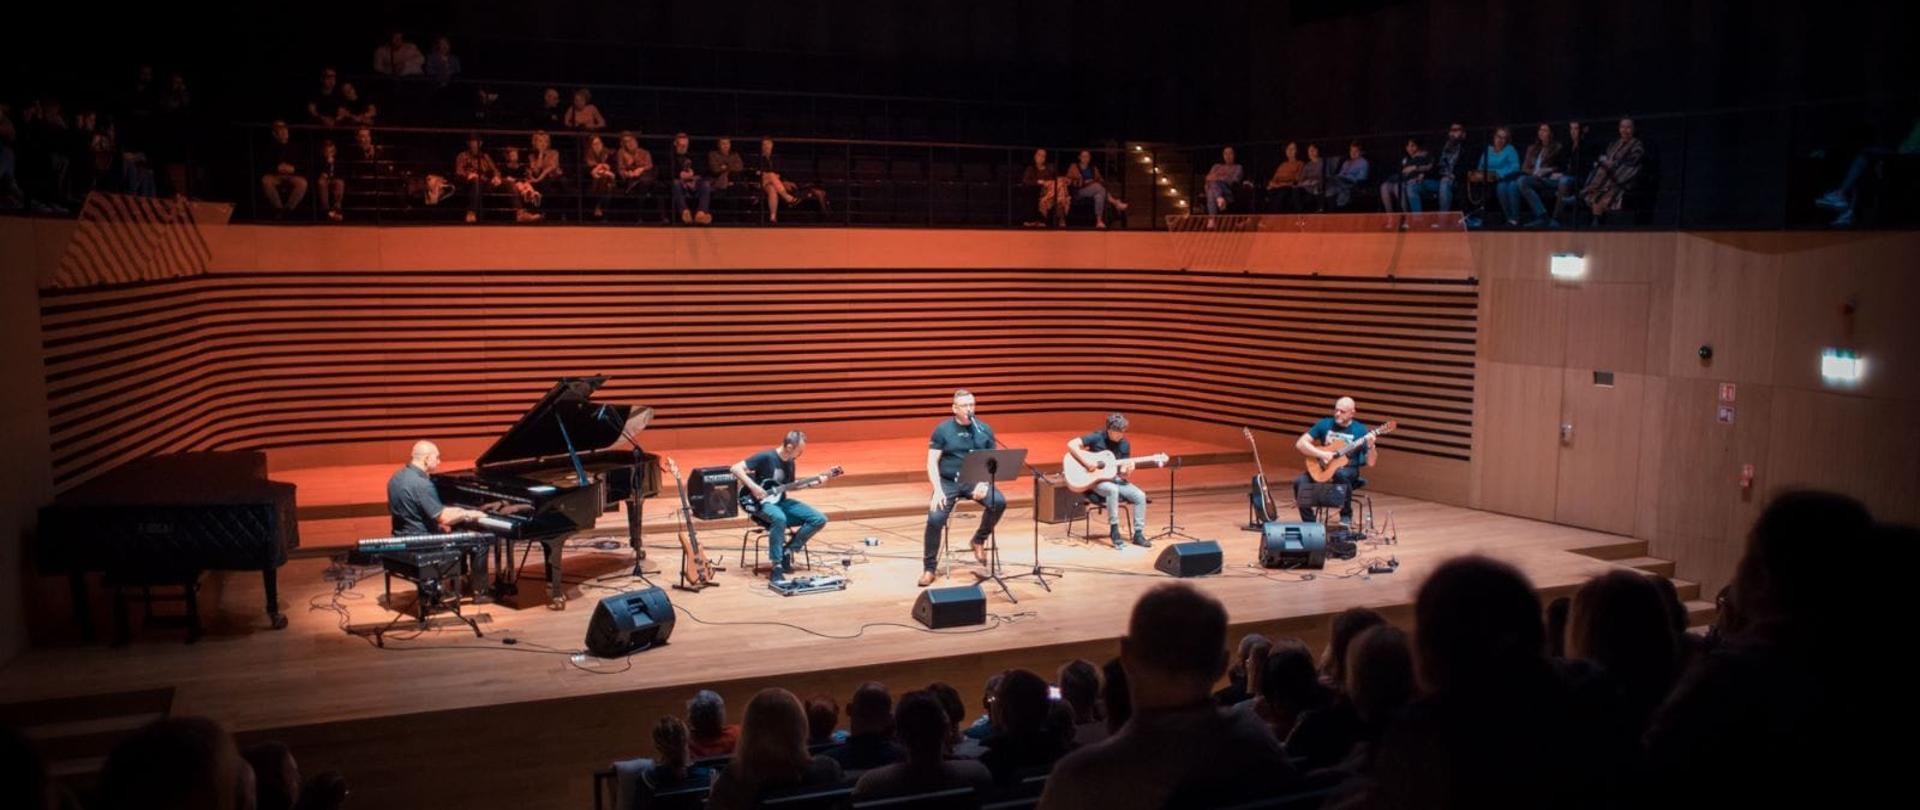 Pięciu mężczyzn na scenie sali koncertowej PSM w Jastrzębiu-Zdroju, po lewej stronie pianista gra na fortepianie, jeden mężczyzna siedząc śpiewa do mikrofonu, trzech gra na gitarach. Z przodu widoczna tyłem siedząca publiczność, nad sceną również siedząca publiczność.